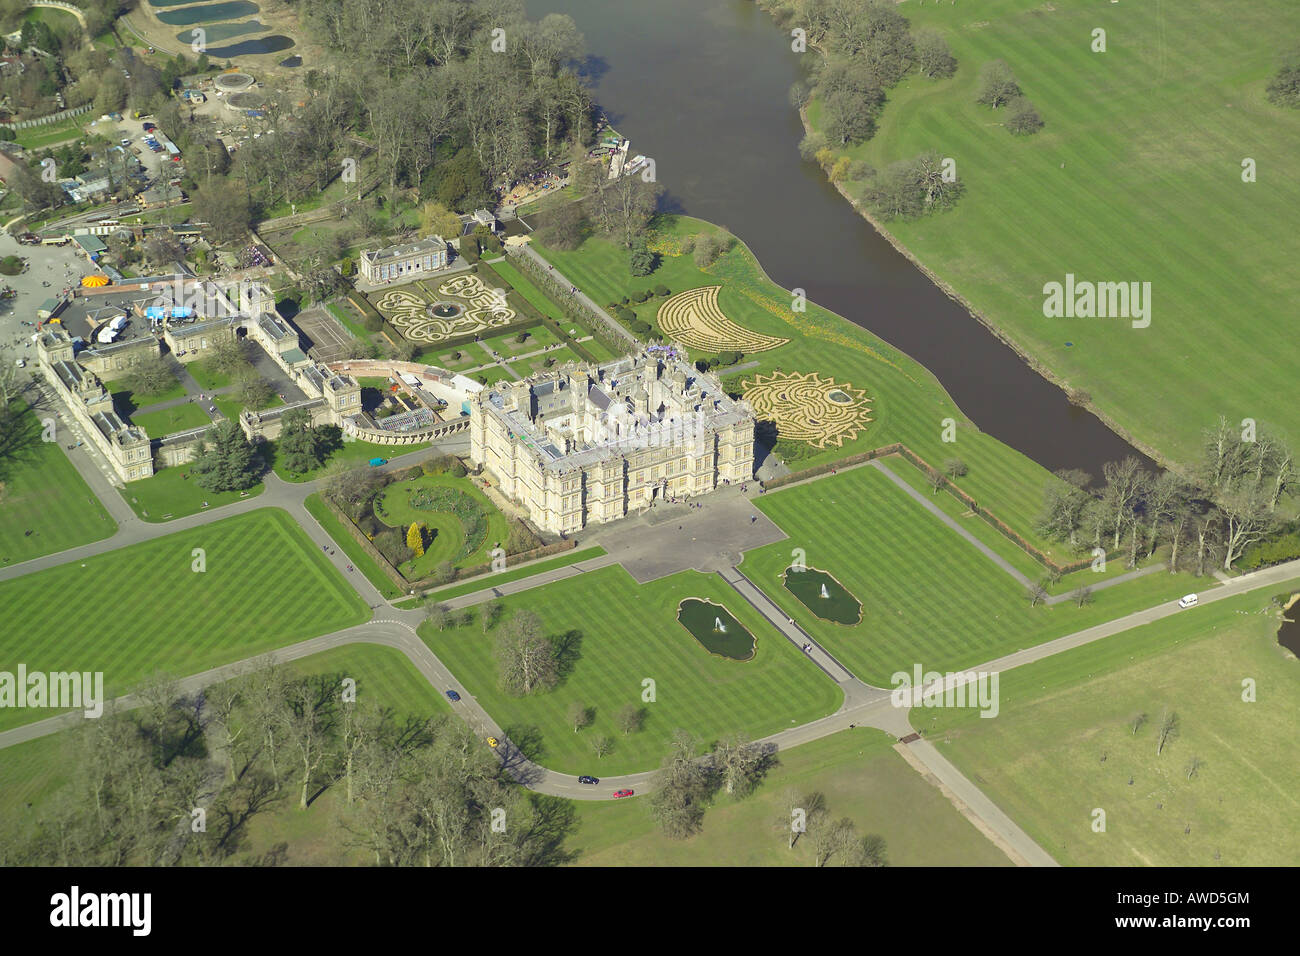 Vista aérea de Longleat House se muestra con sus jardines formales y lago. La casa señorial es famoso por su Parque Safari Foto de stock